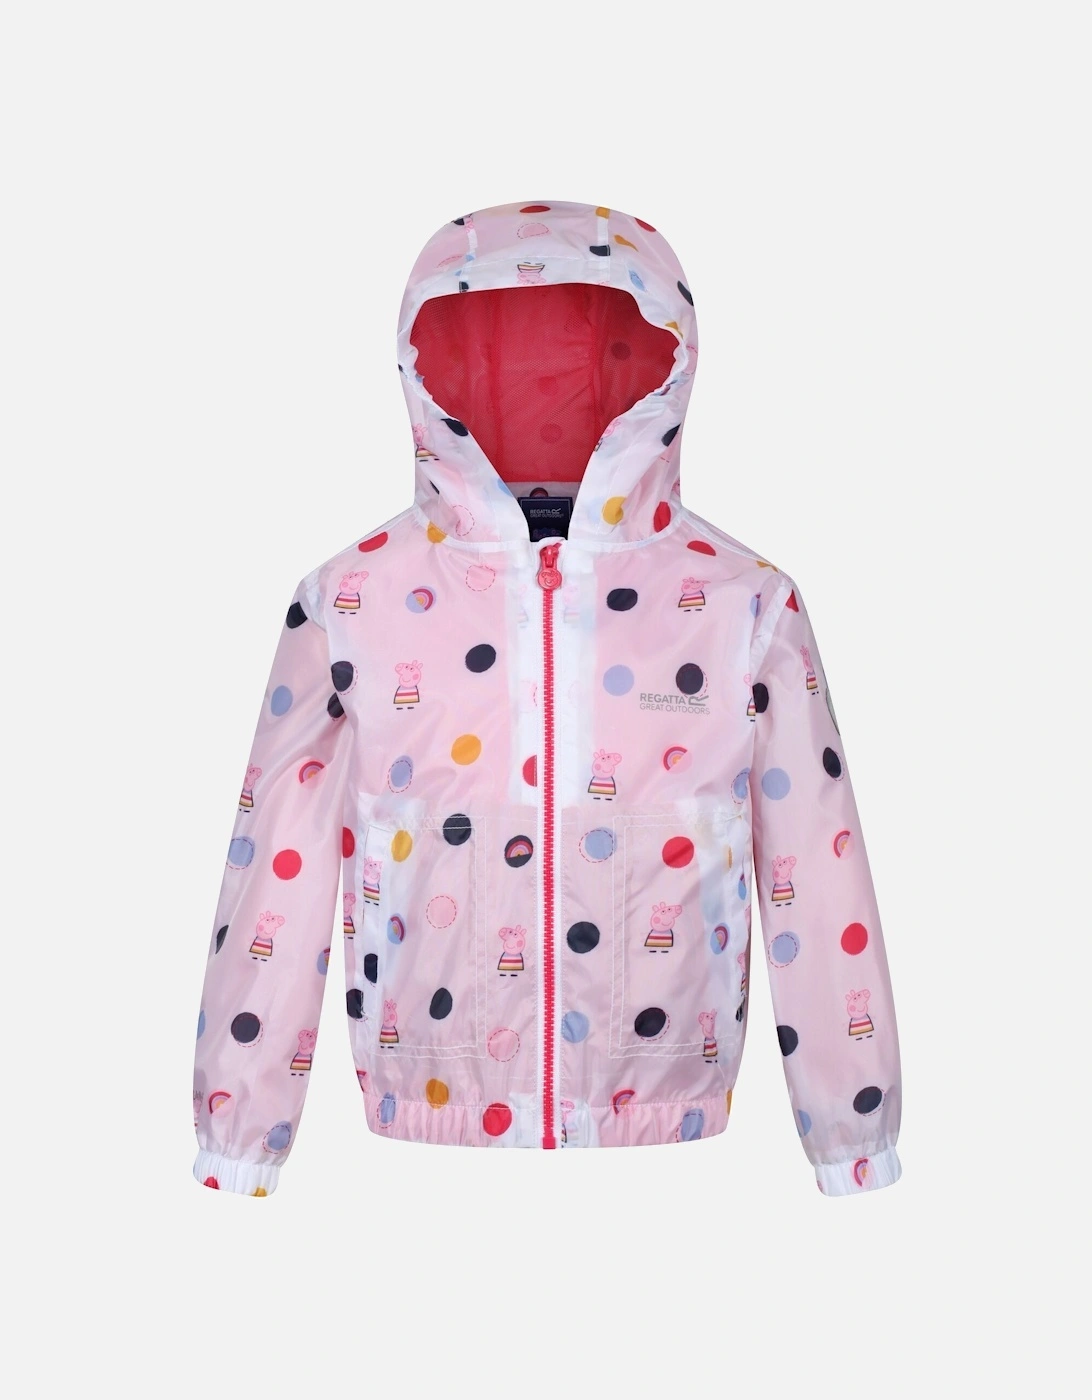 Childrens/Kids Peppa Pig Polka Dot Hooded Waterproof Jacket, 6 of 5